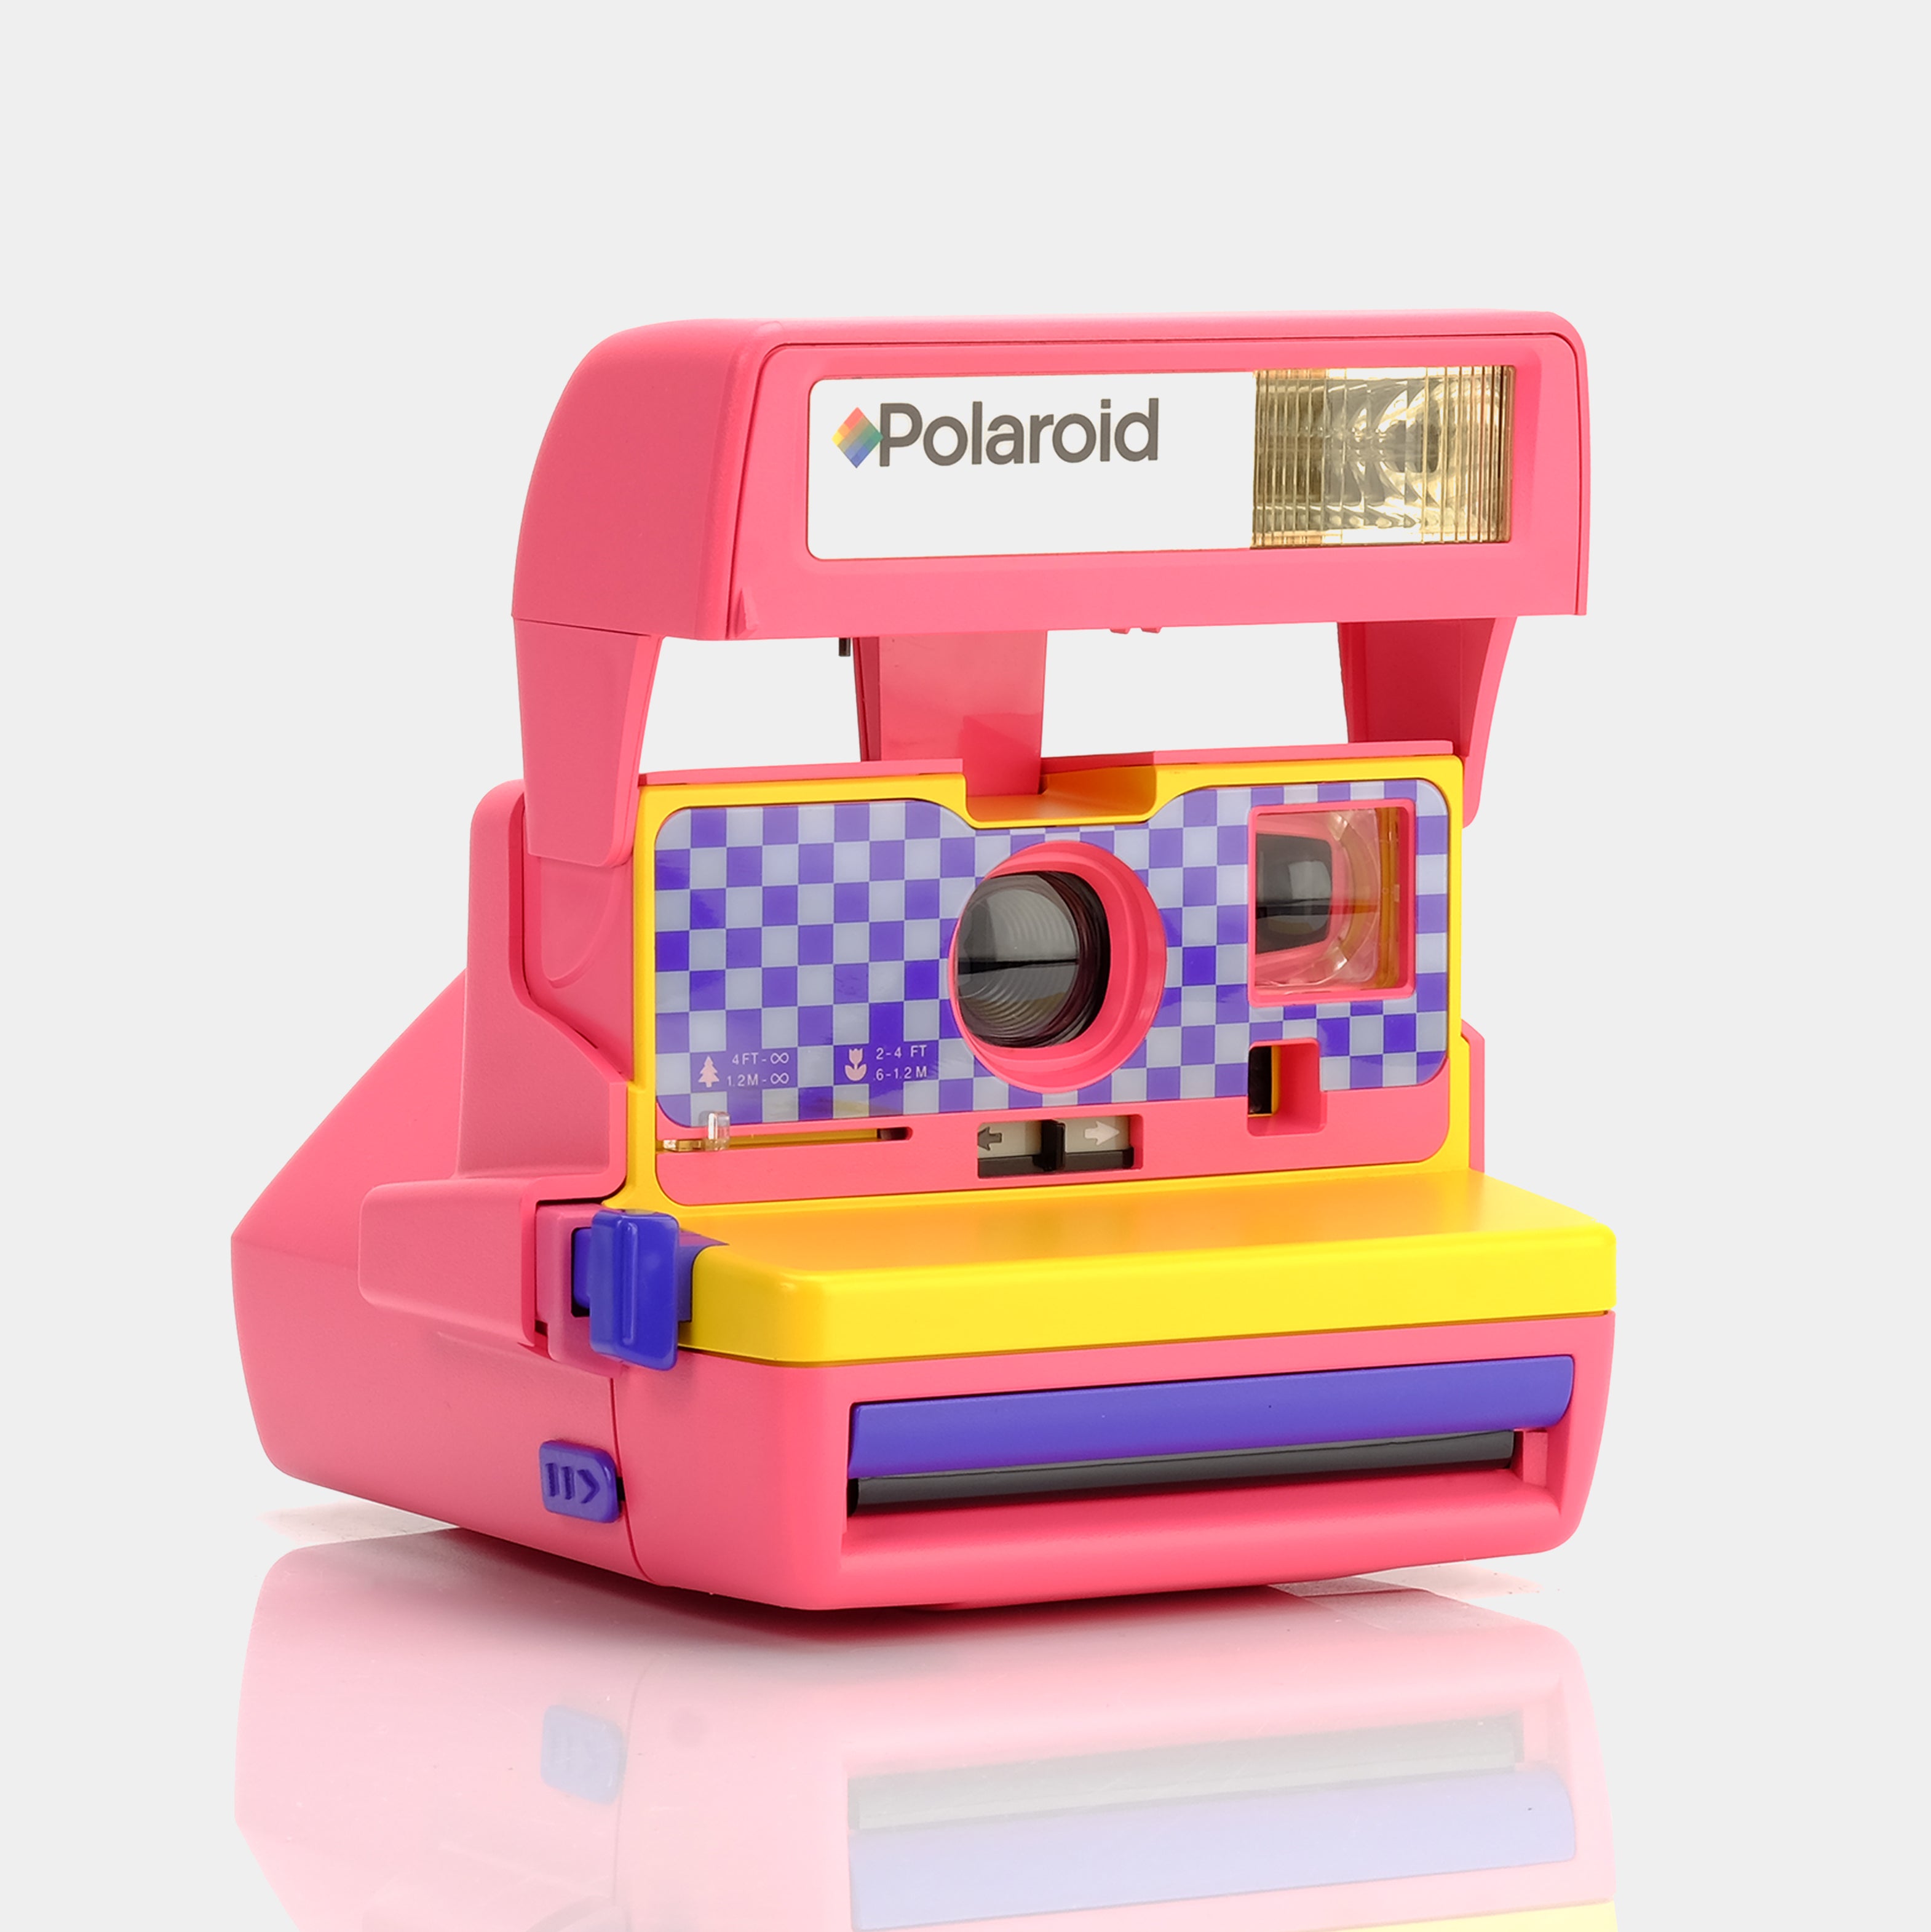 Retro Polaroid P 600 Instant Film Camera – Film Camera Store